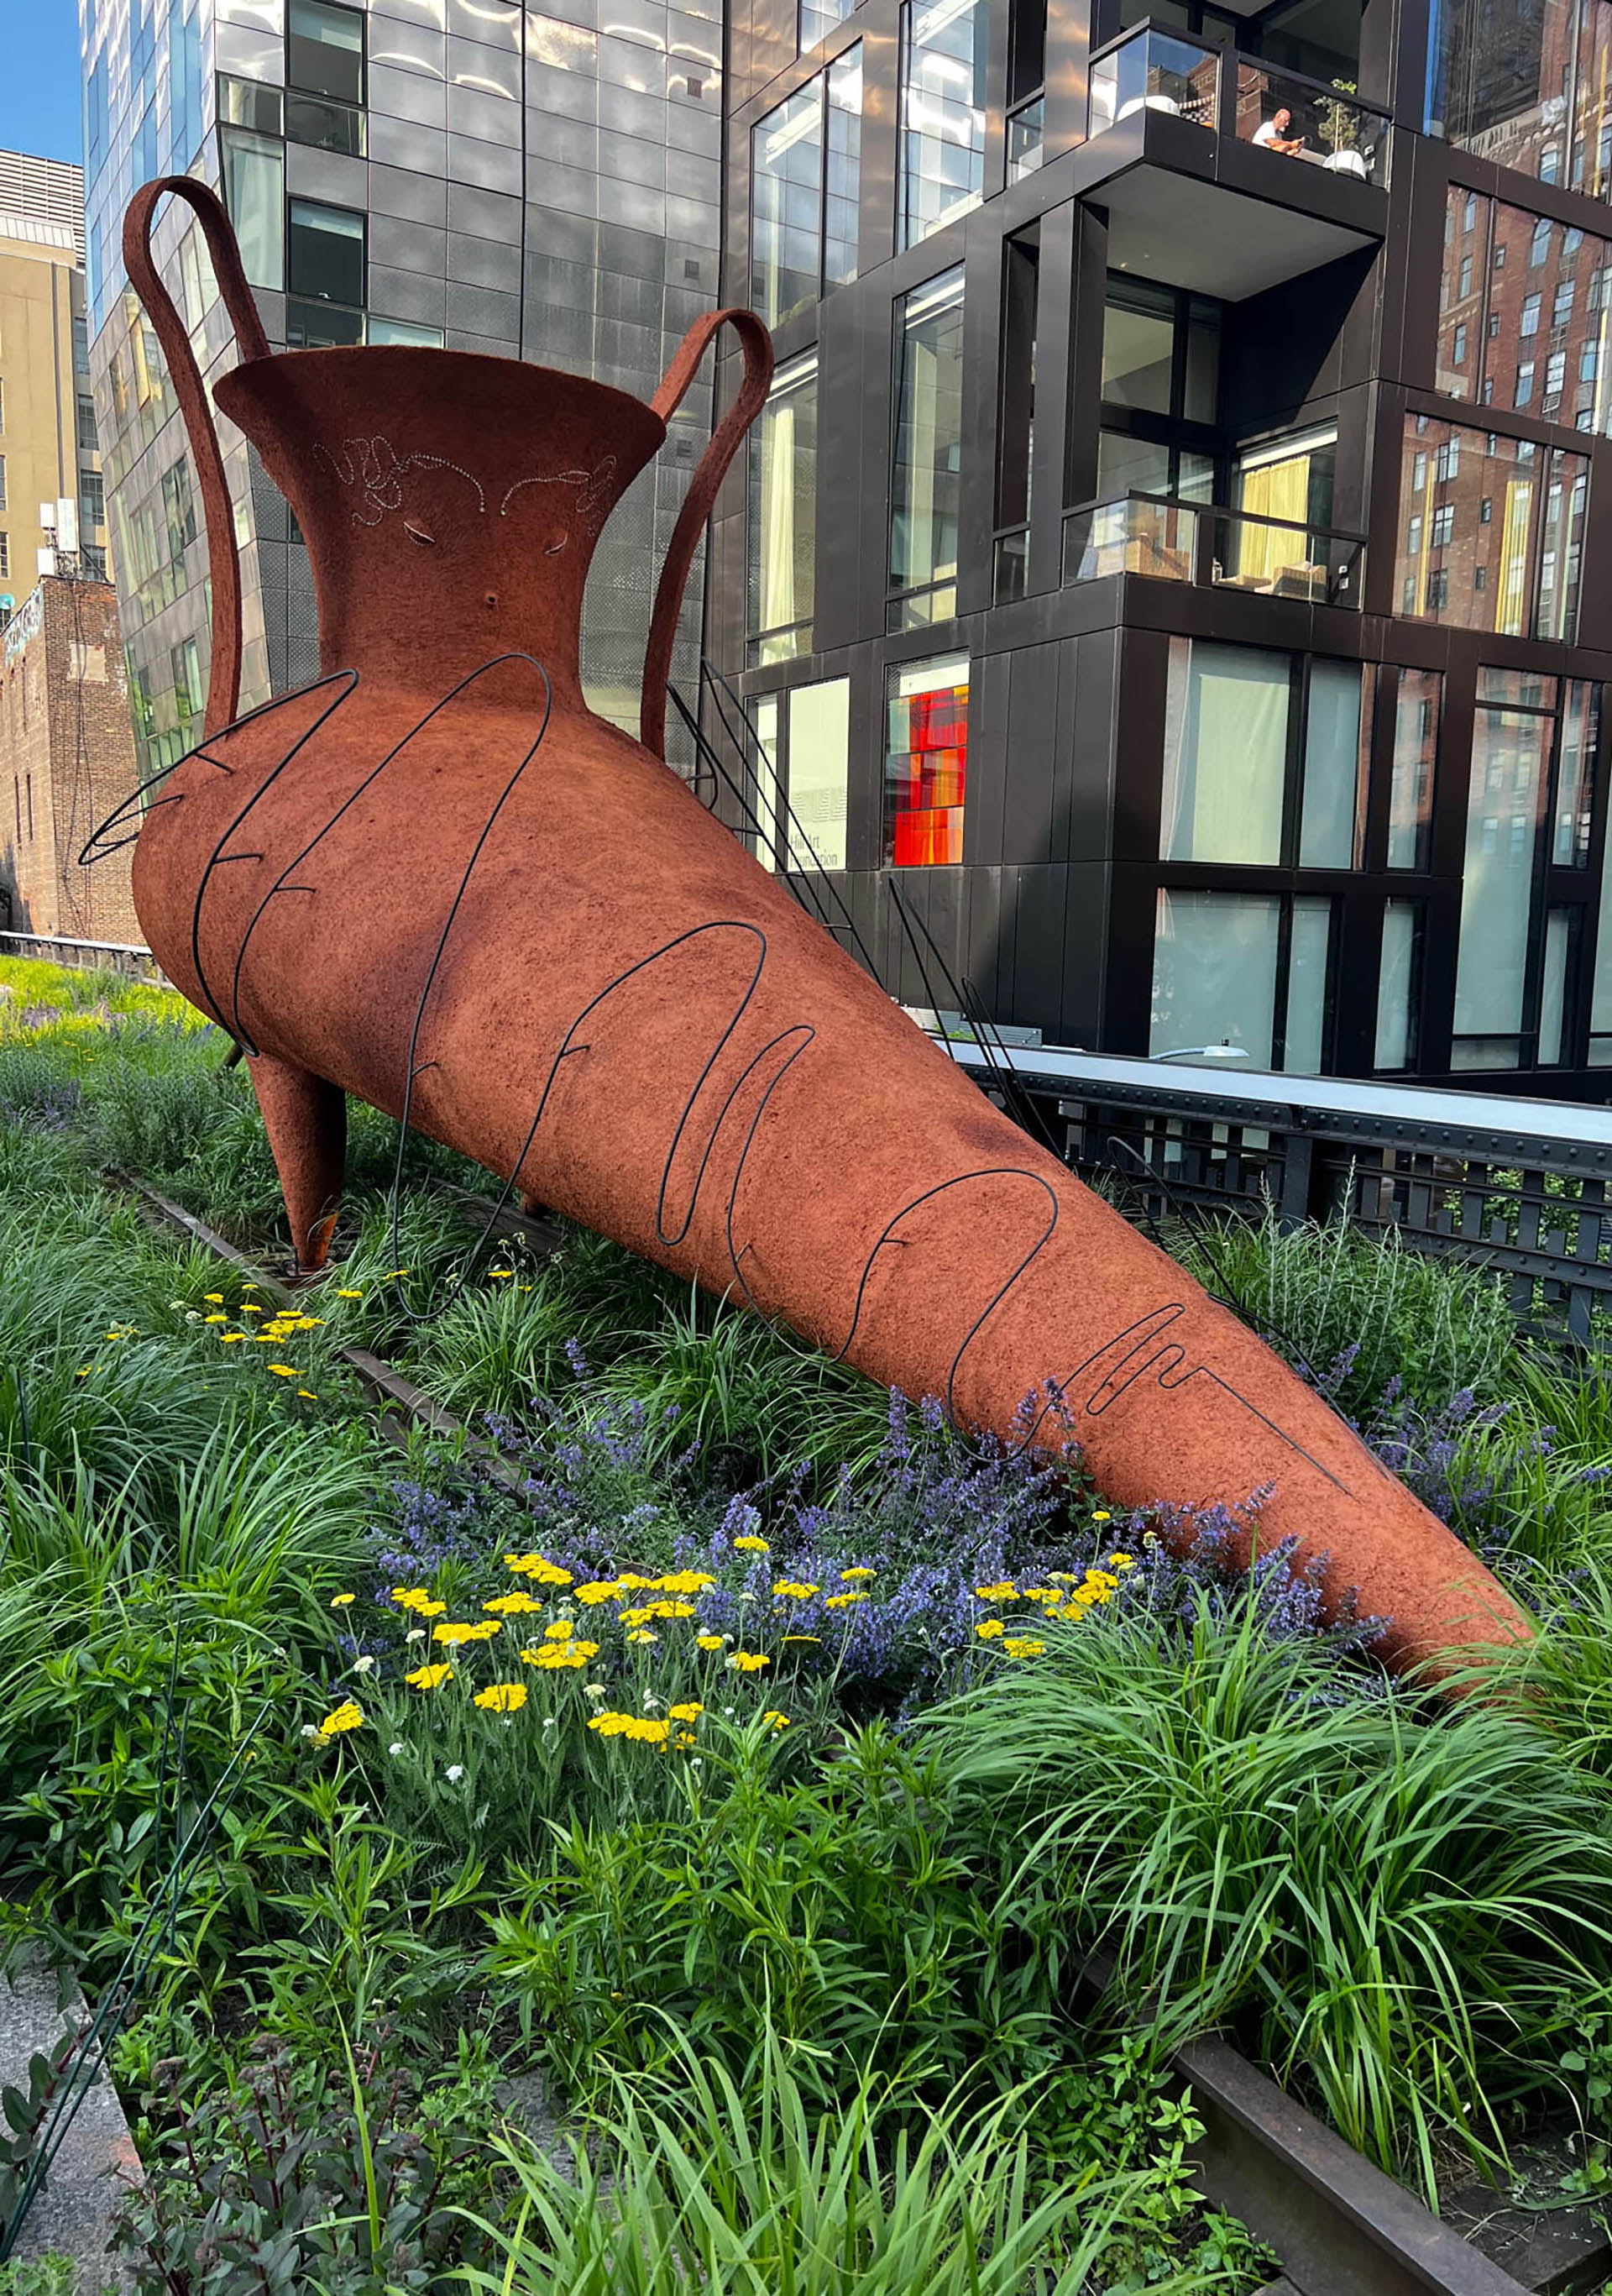 Gabriel Chaile acaba de presentar en Nueva York una inmensa escultura titulada "El viento sopla donde quiere" en el parque elevado High Line  (Foto: Télam S.E.)